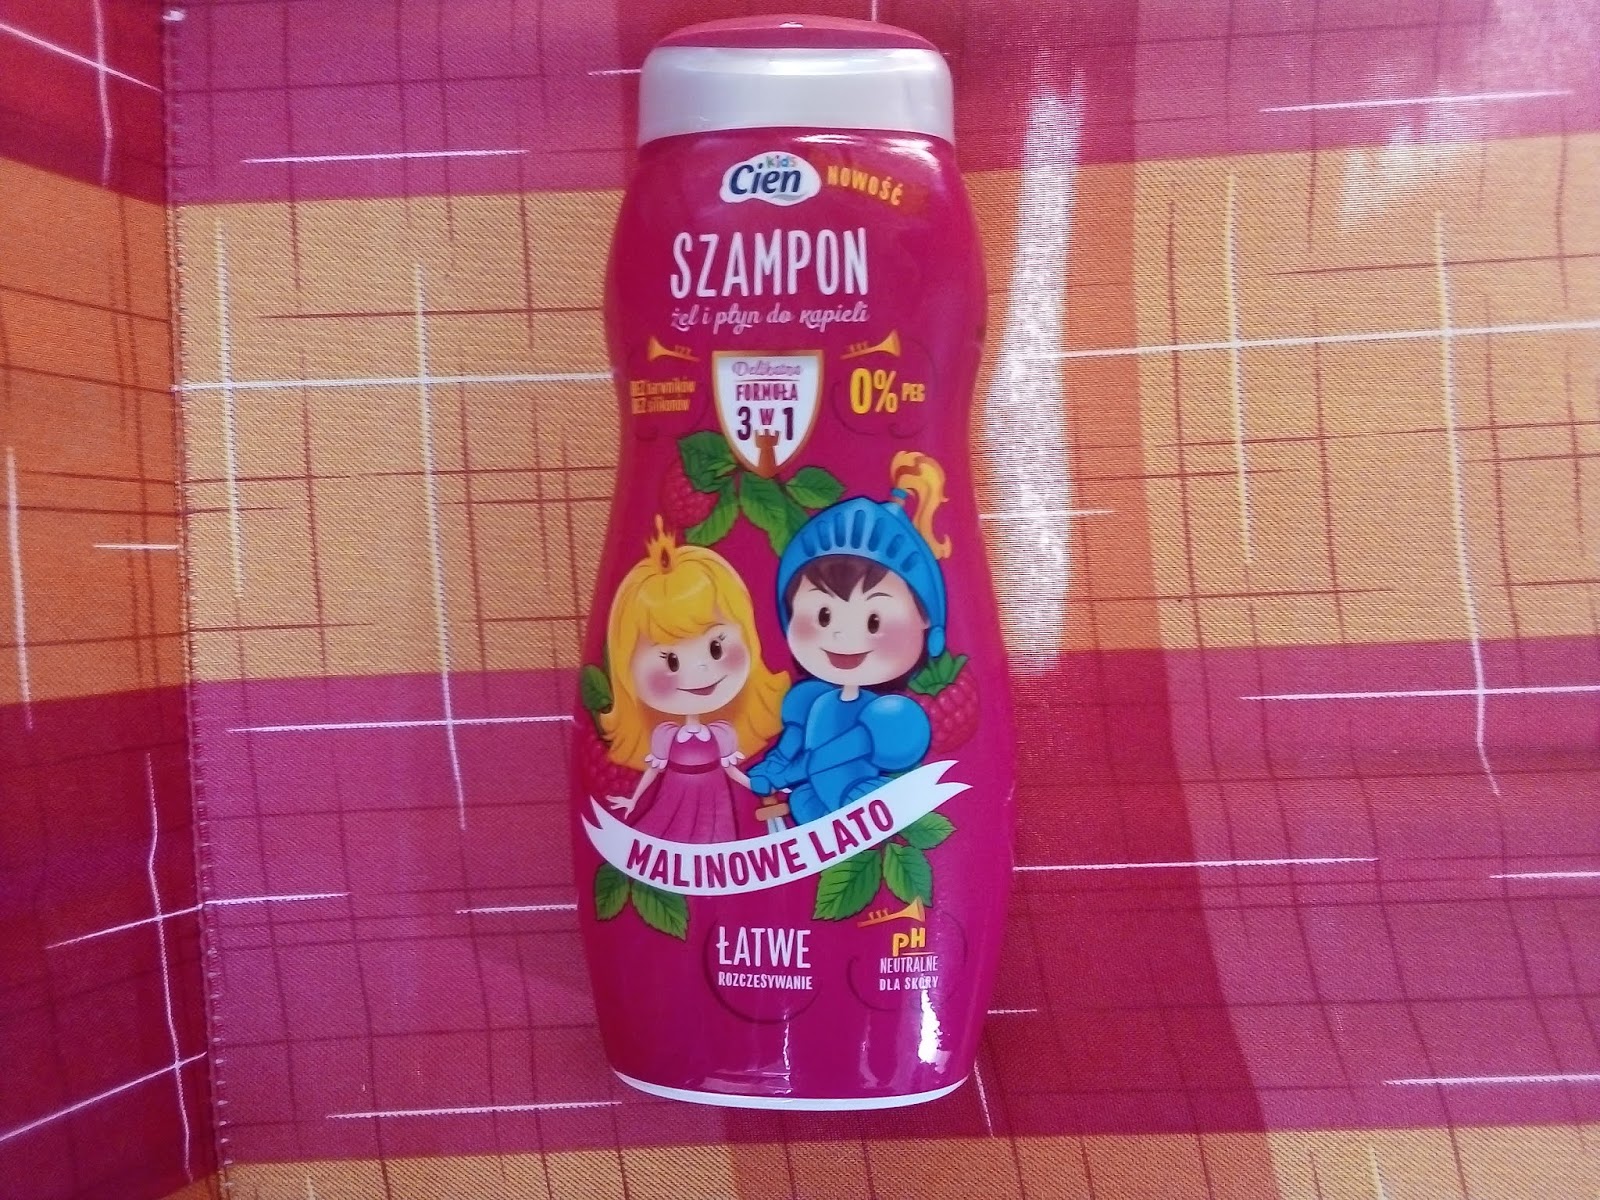 lidl szampon cien dla dzieci